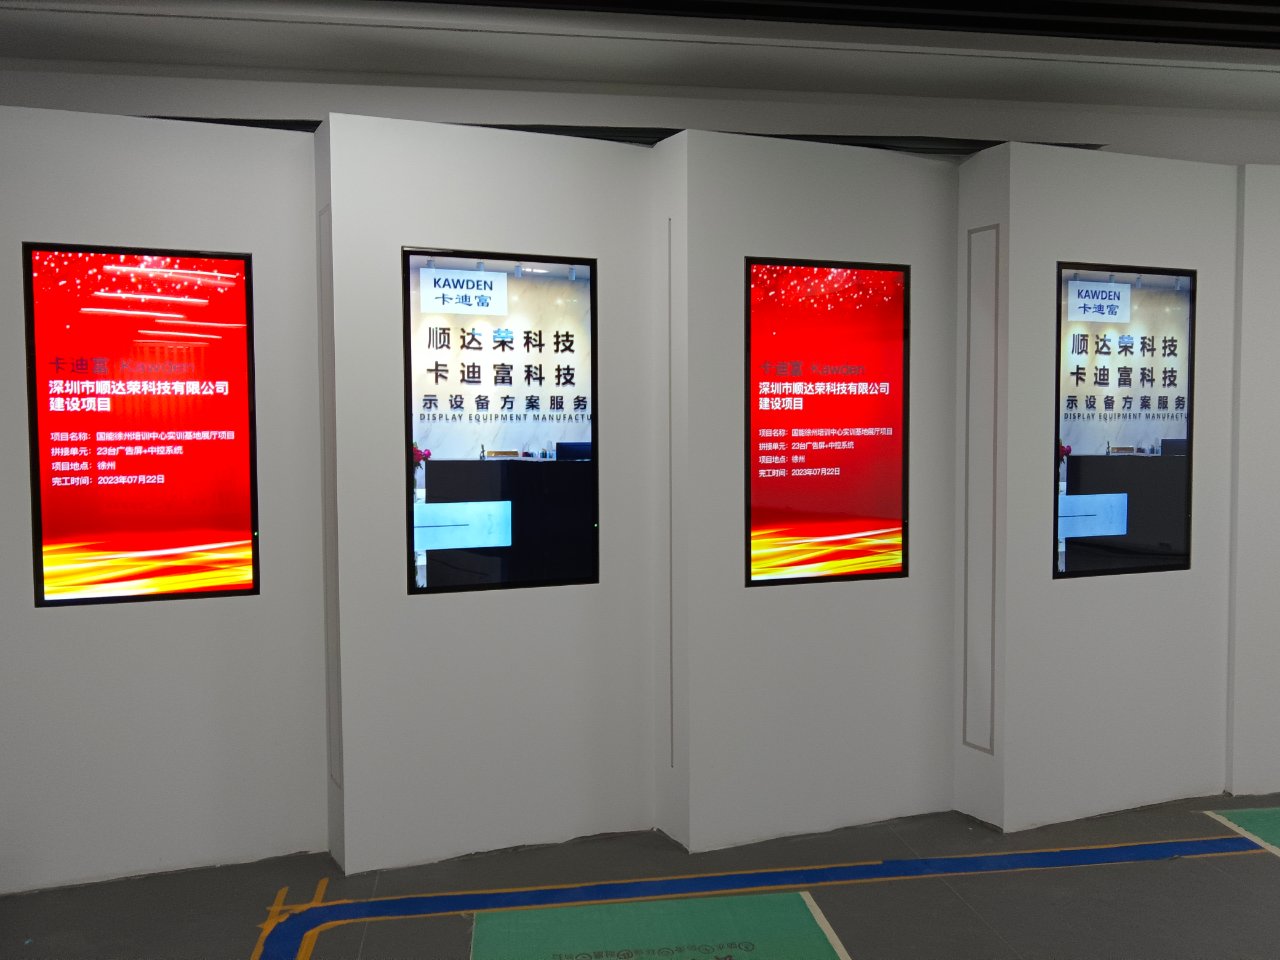 徐州电力高级技工学校展厅数字展厅广告机展示图片